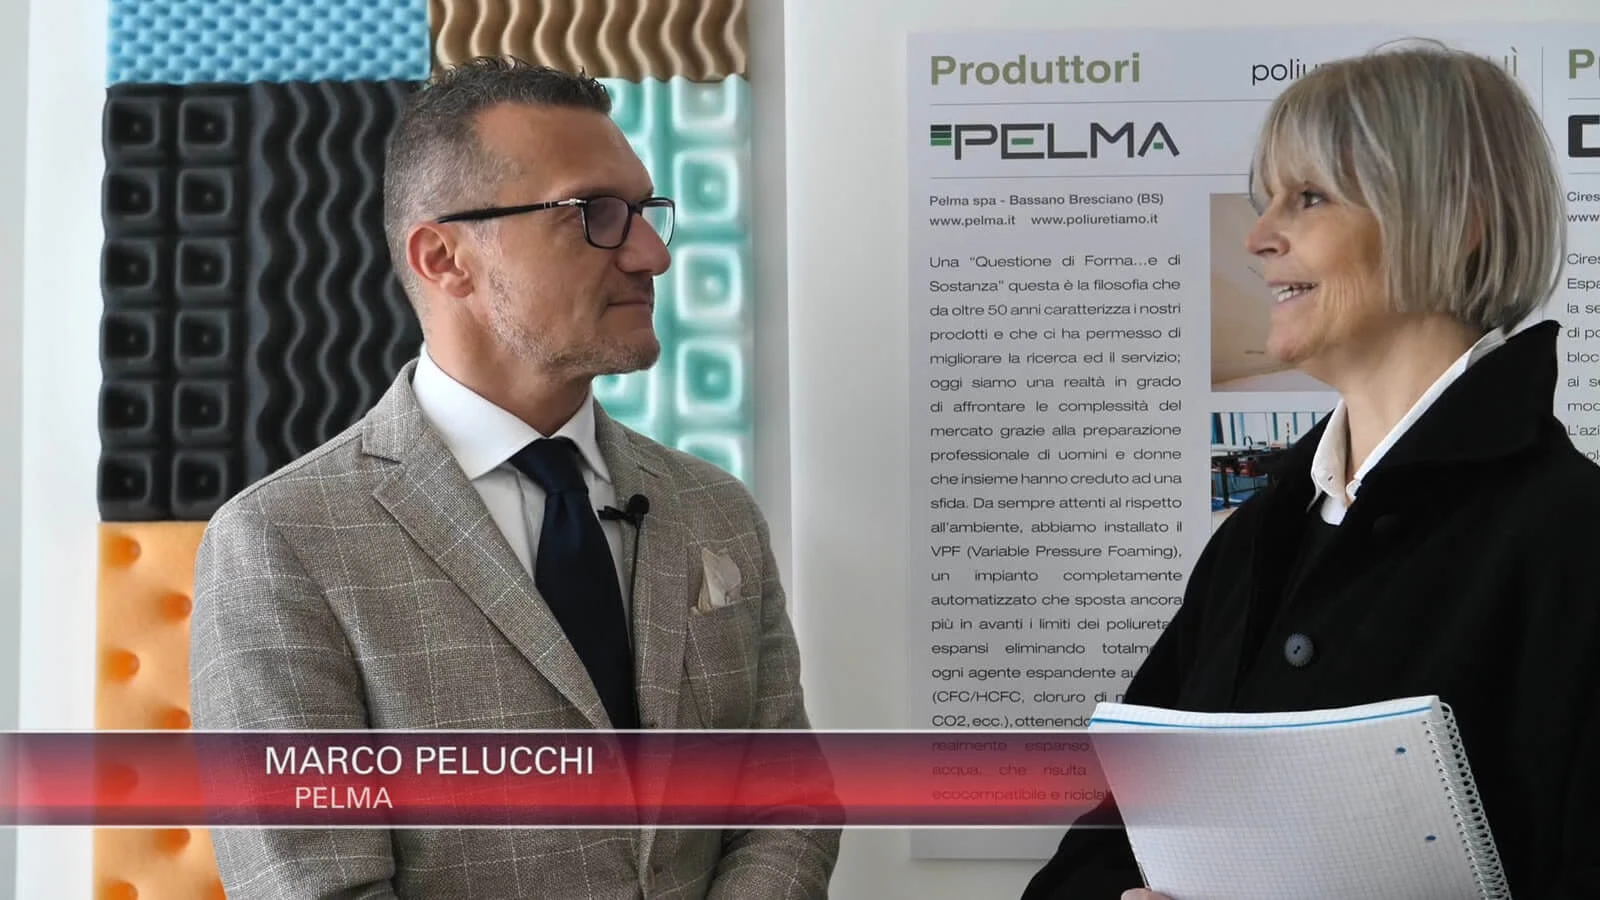 Pelma, leader in polyurethane at Milan Design Week 2019